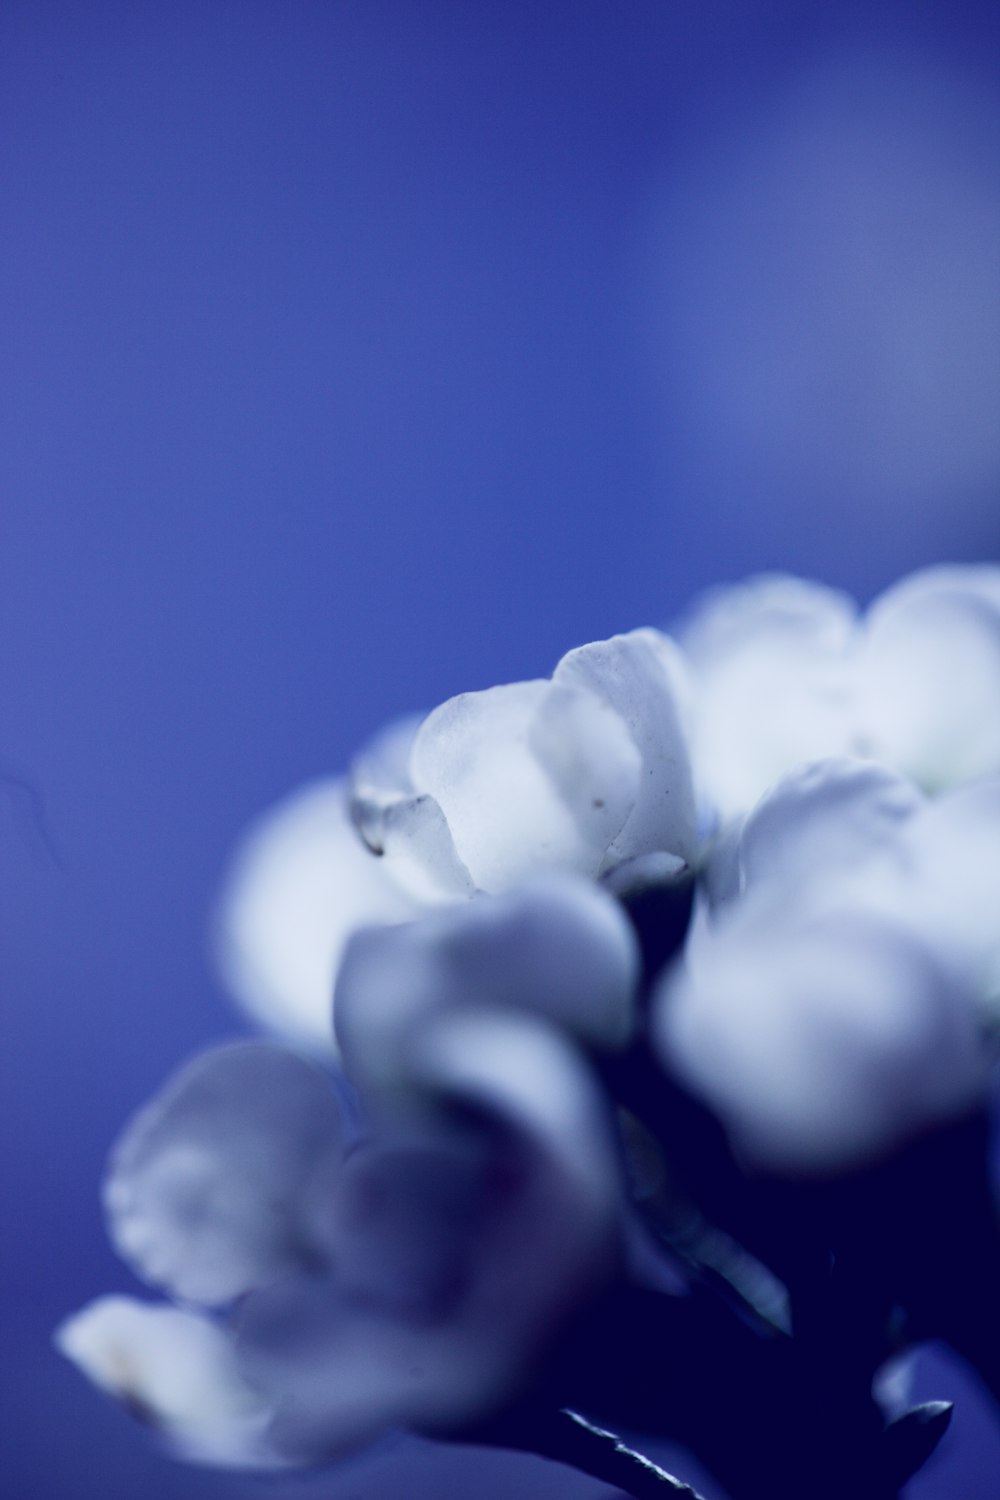 흰 꽃잎 꽃의 선택적 초점 사진